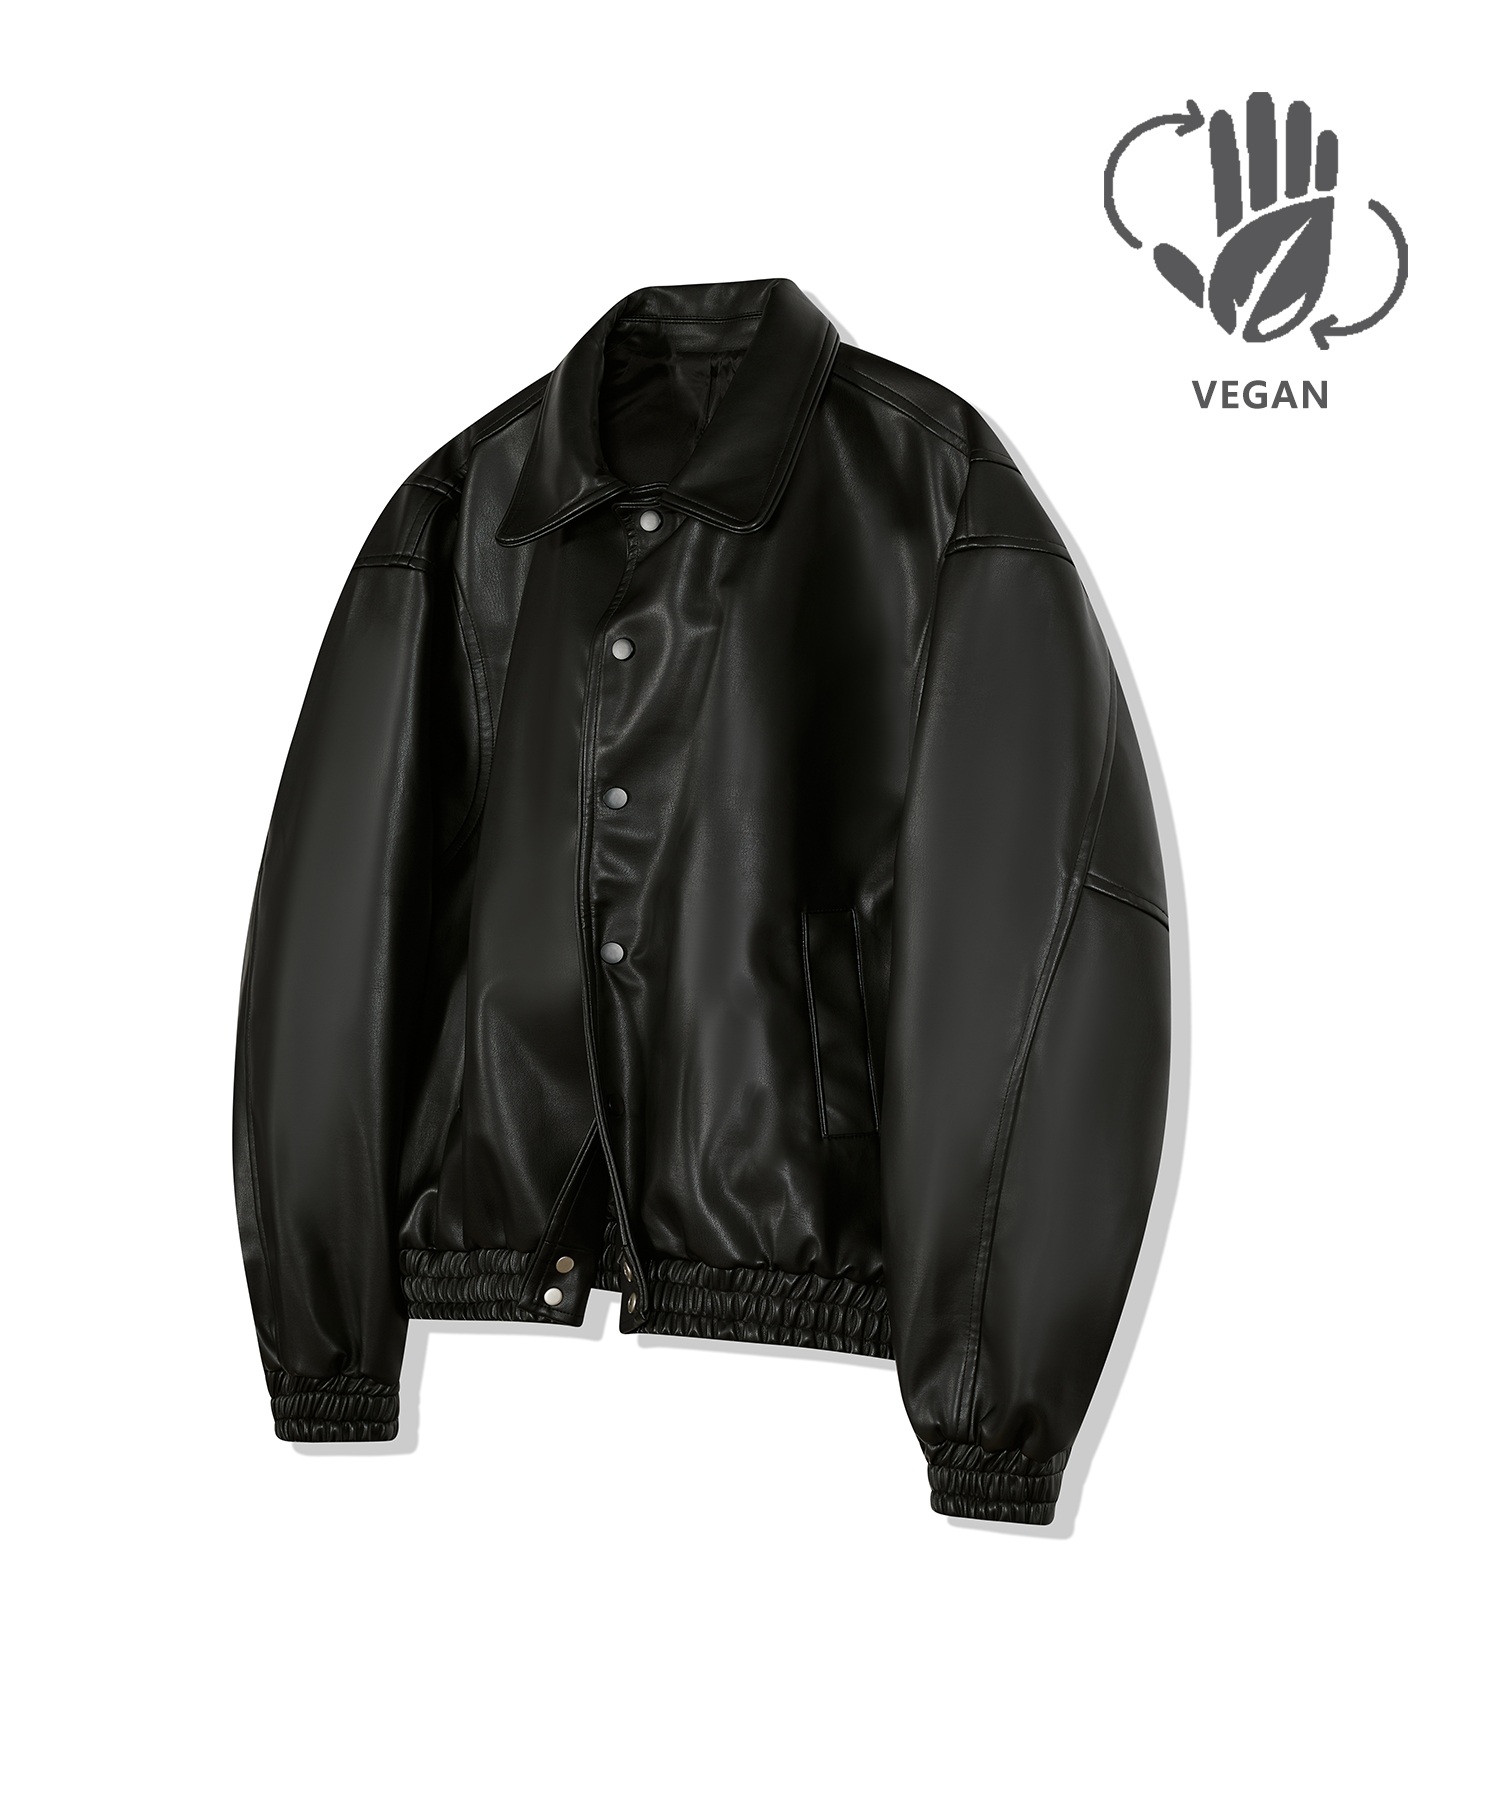 87-STAN030 [Vegan Leather] Bold Stitch Line Varsity Leather Jacket Black